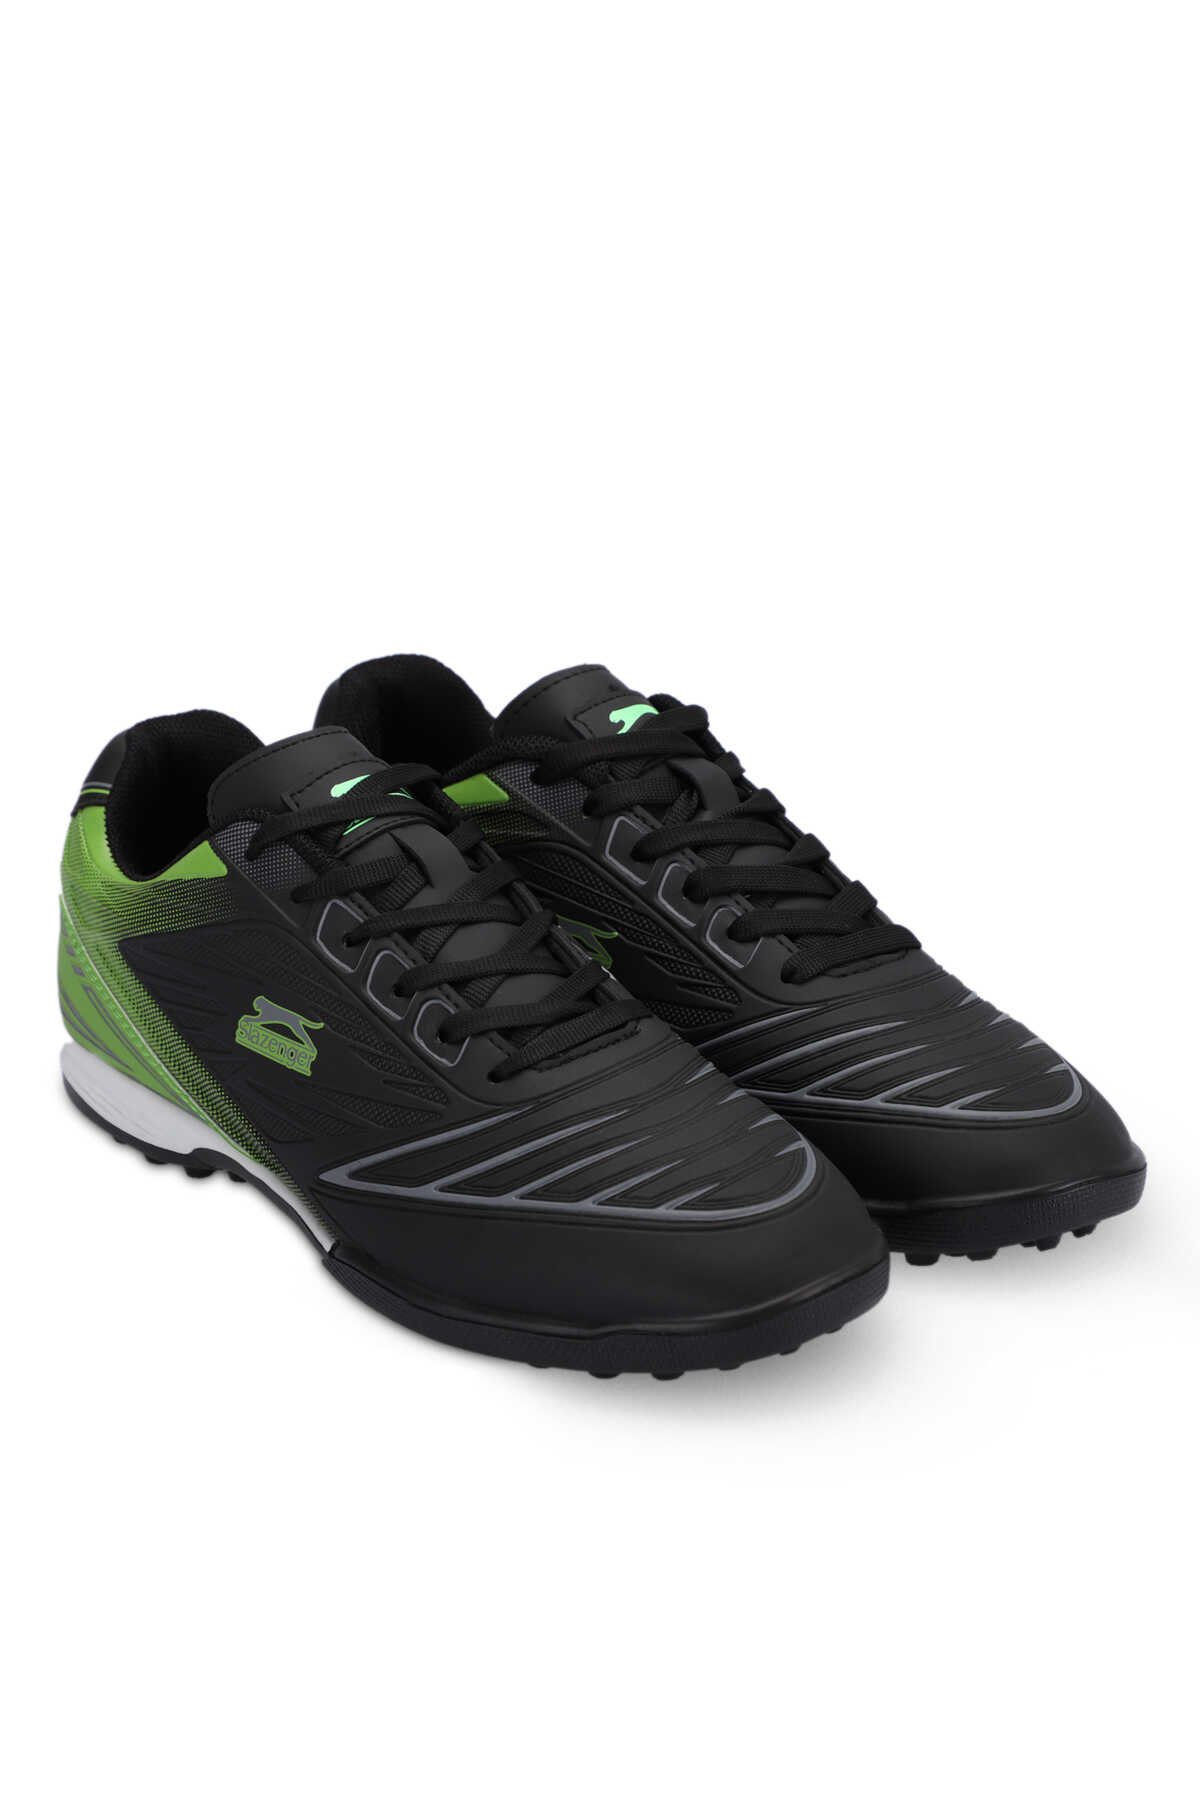 DANGER I HS Futbol Erkek Halı Saha Ayakkabı Siyah / Yeşil